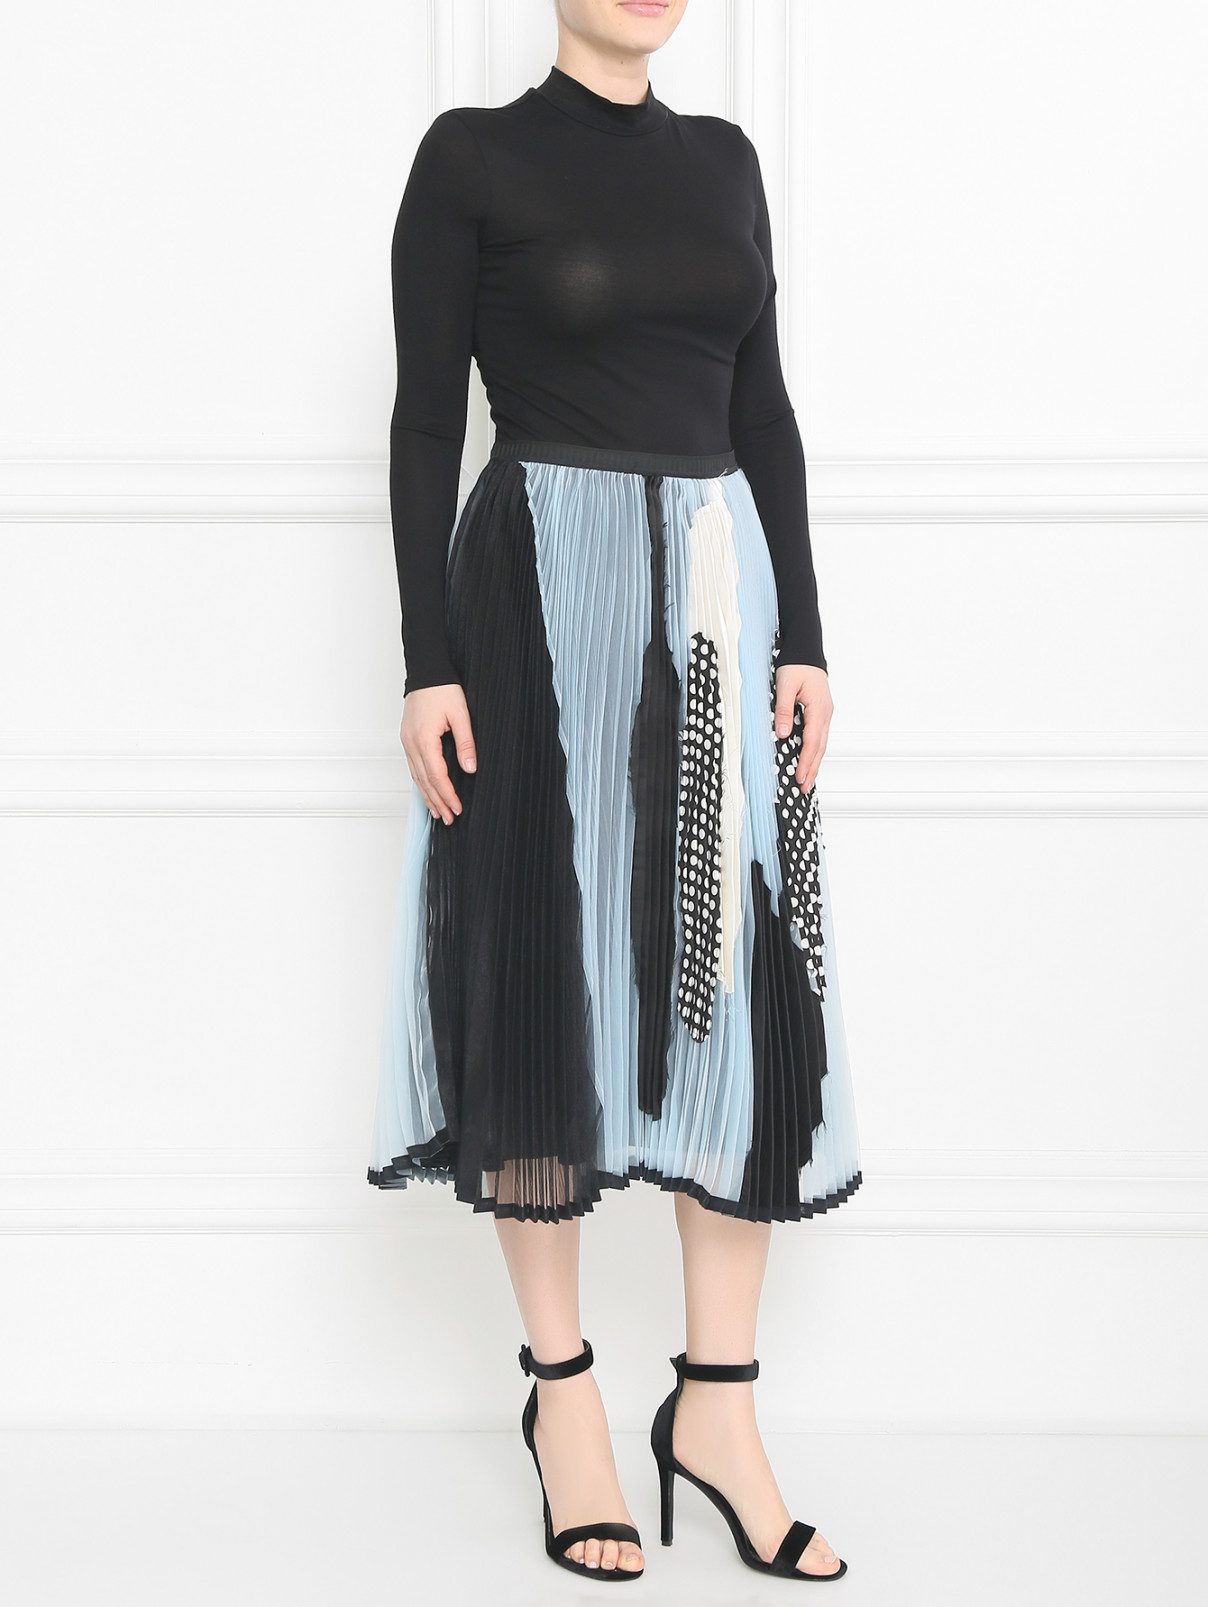 Плиссированная юбка-миди Antonio Marras  –  Модель Общий вид  – Цвет:  Синий